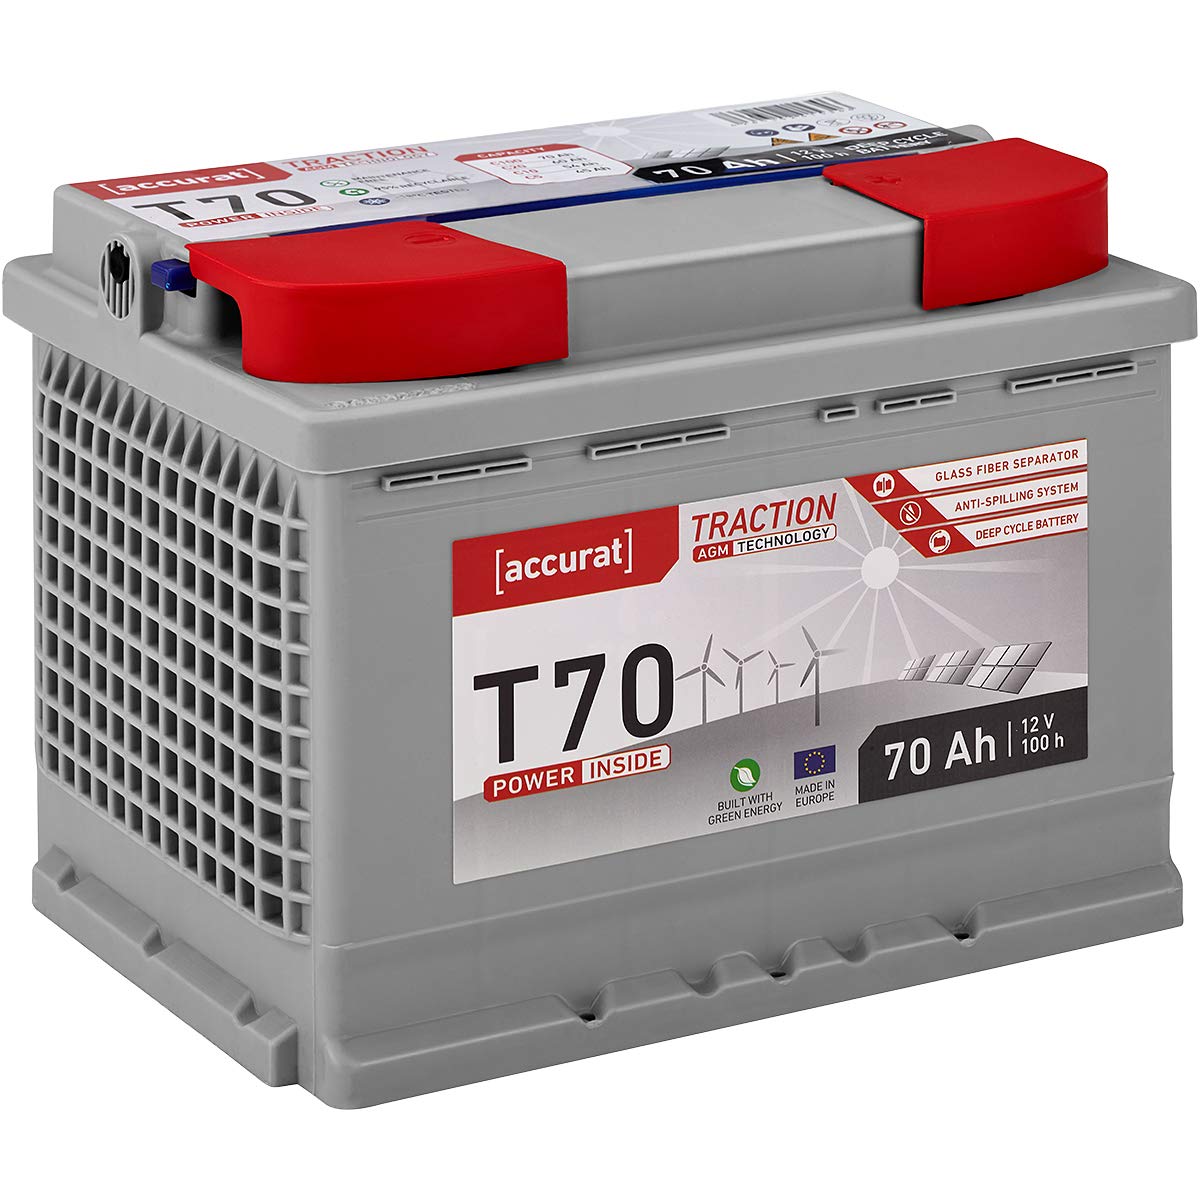 Accurat Traction T70 AGM Batterie - 12V, 70Ah, zyklenfest, bis 30% mehr Kapazität - VRLA Versorgungsbatterie, Bootsbatterie, Solarbatterie für Wohnwagen, Wohnmobil, Camper von Accurat